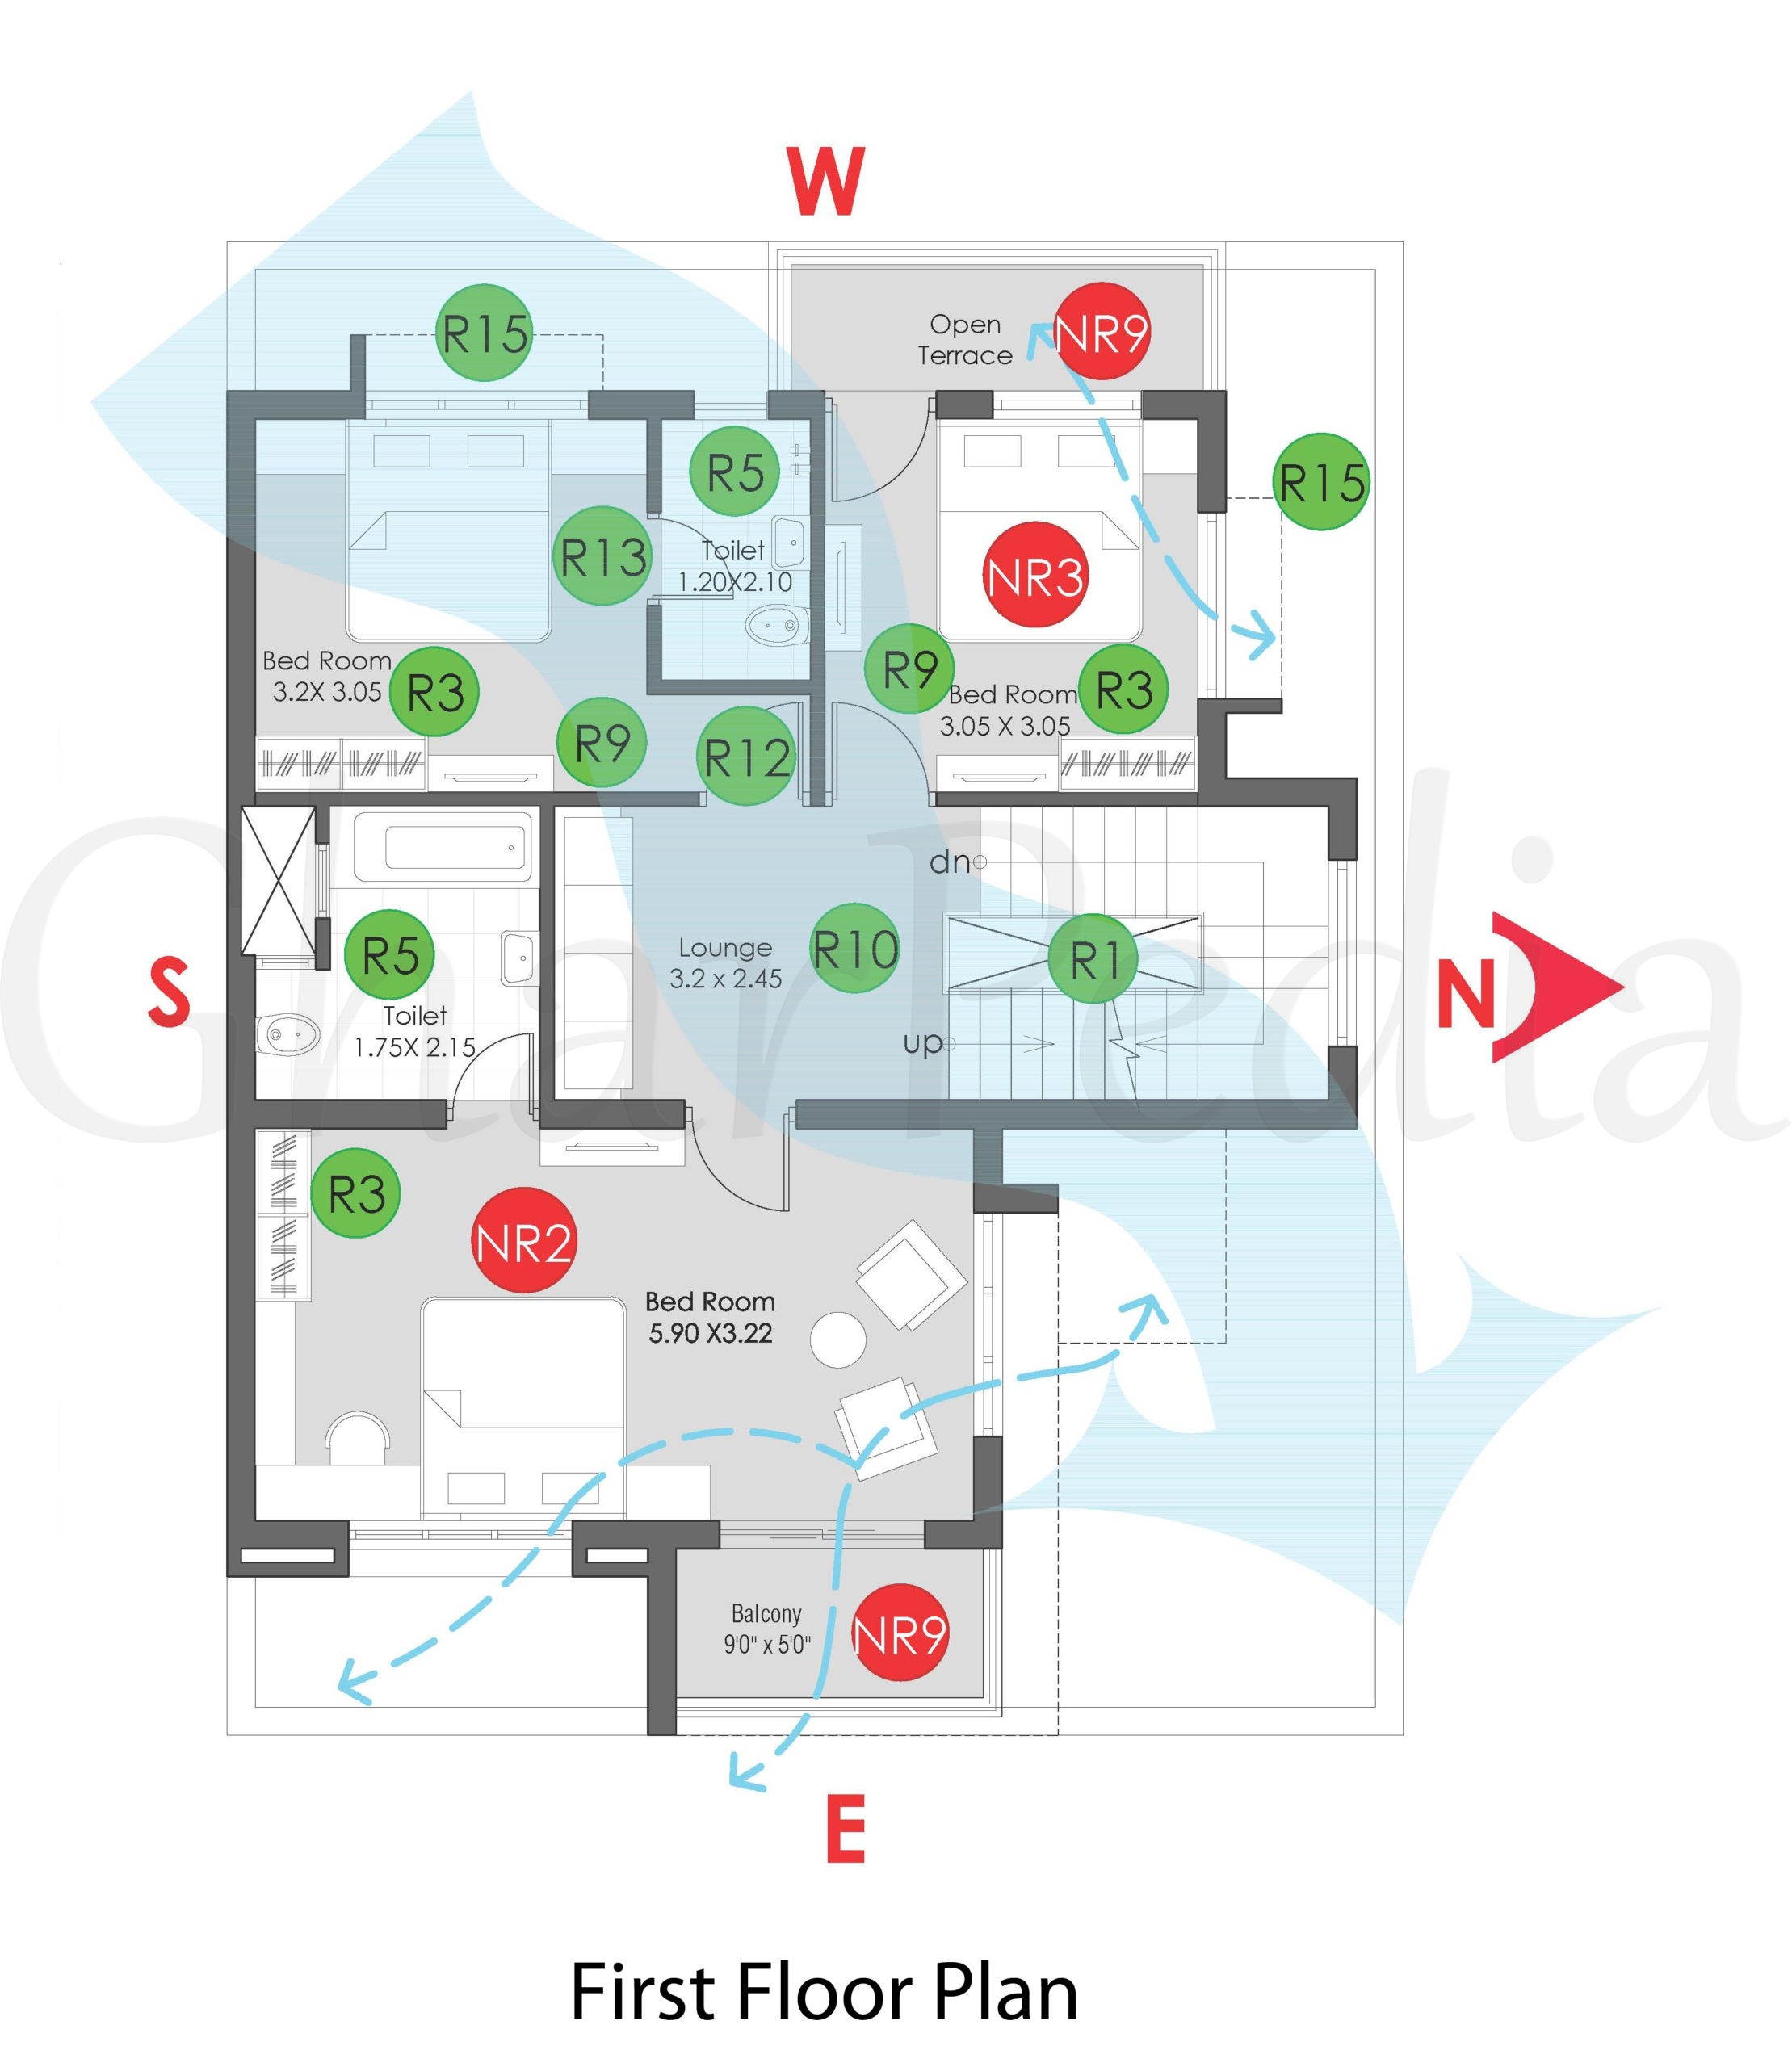 Plan Analysis of 4-BHK Duplex 117 sq.-mt. First Floor Plan